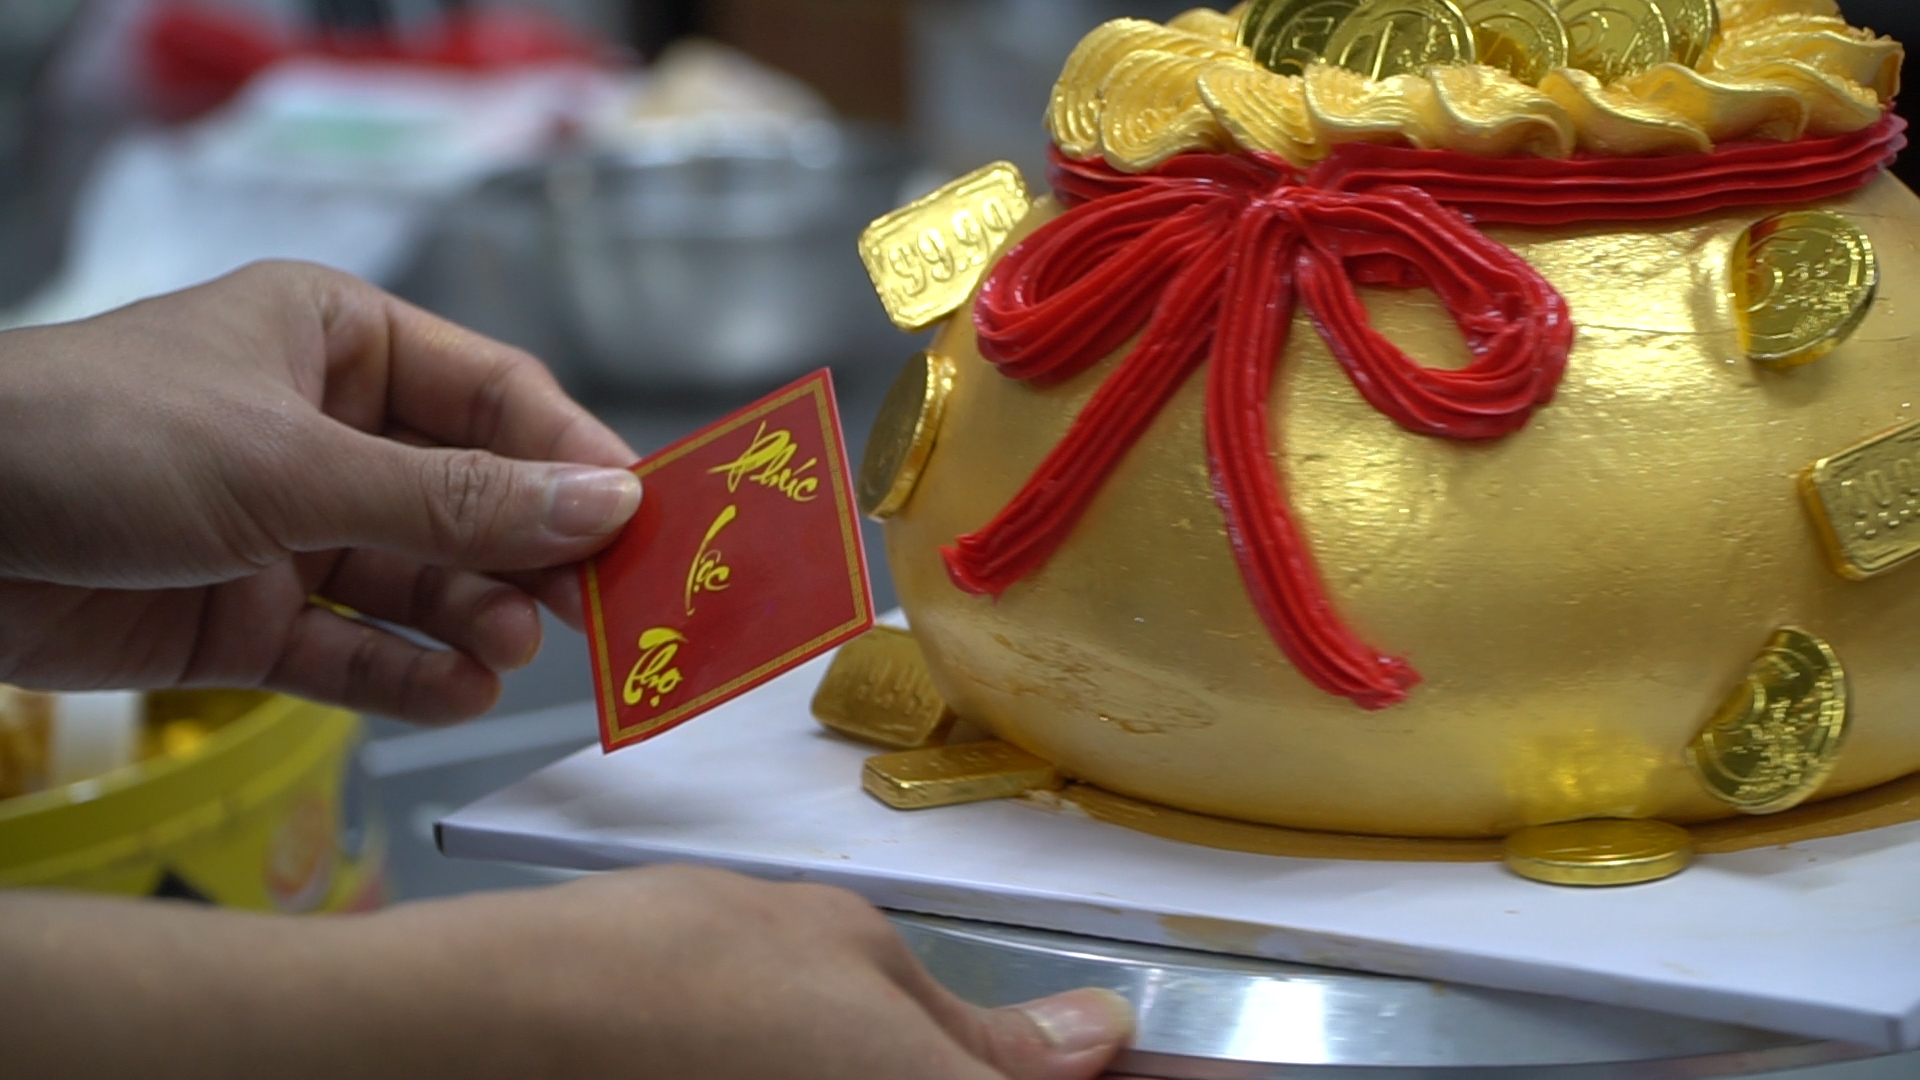 Bánh kem hình hũ vàng được “gọt giũa” để bánh có hình tròn, bên ngoài bọc thêm lớp kem tươi và được trang trí bằng những họa tiết đồng tiền vàng lấp lánh